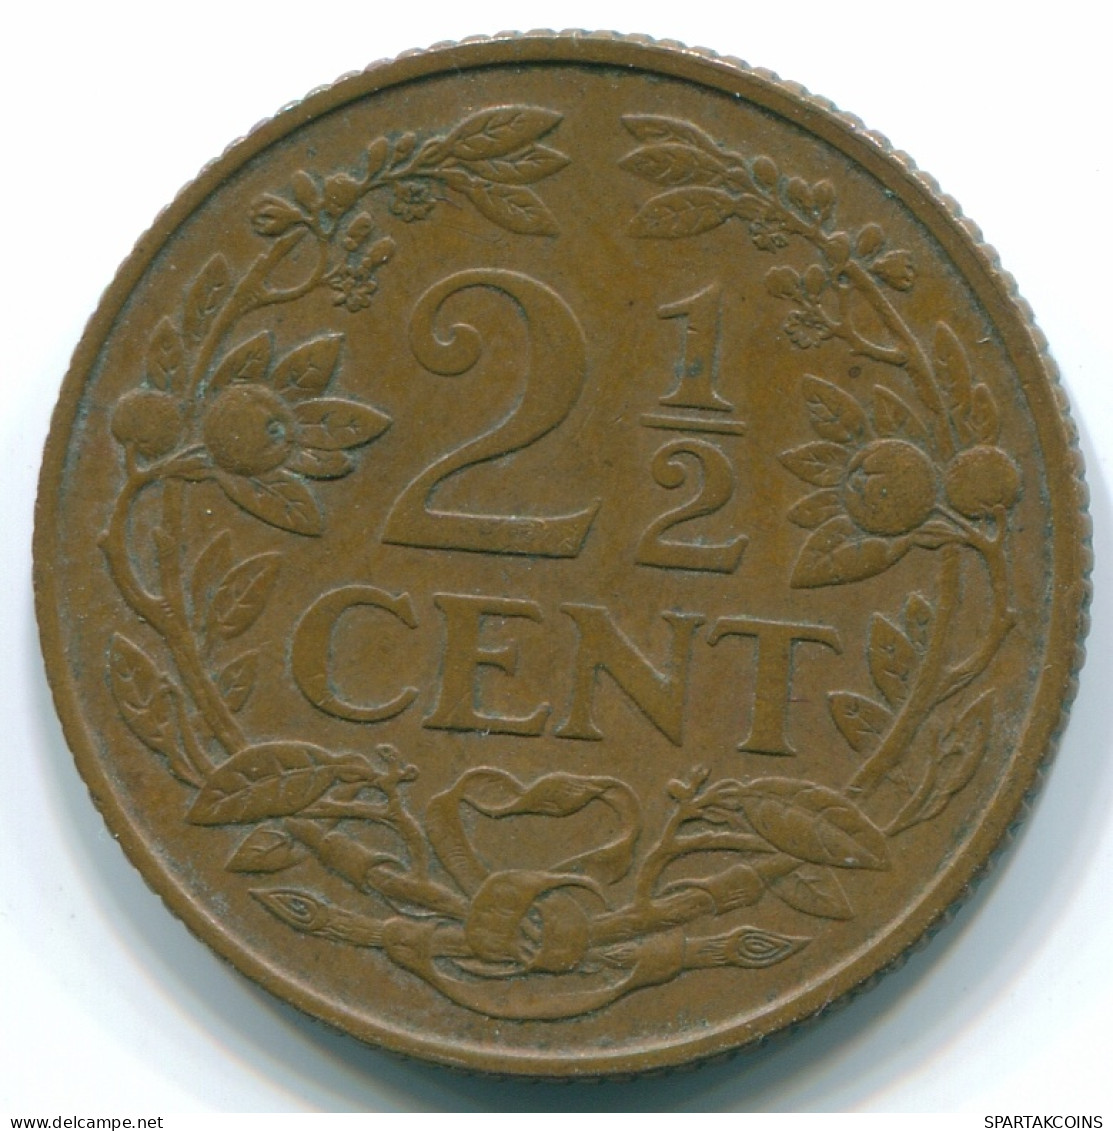 2 1/2 CENT 1959 CURACAO NIEDERLANDE Bronze Koloniale Münze #S10162.D - Curacao